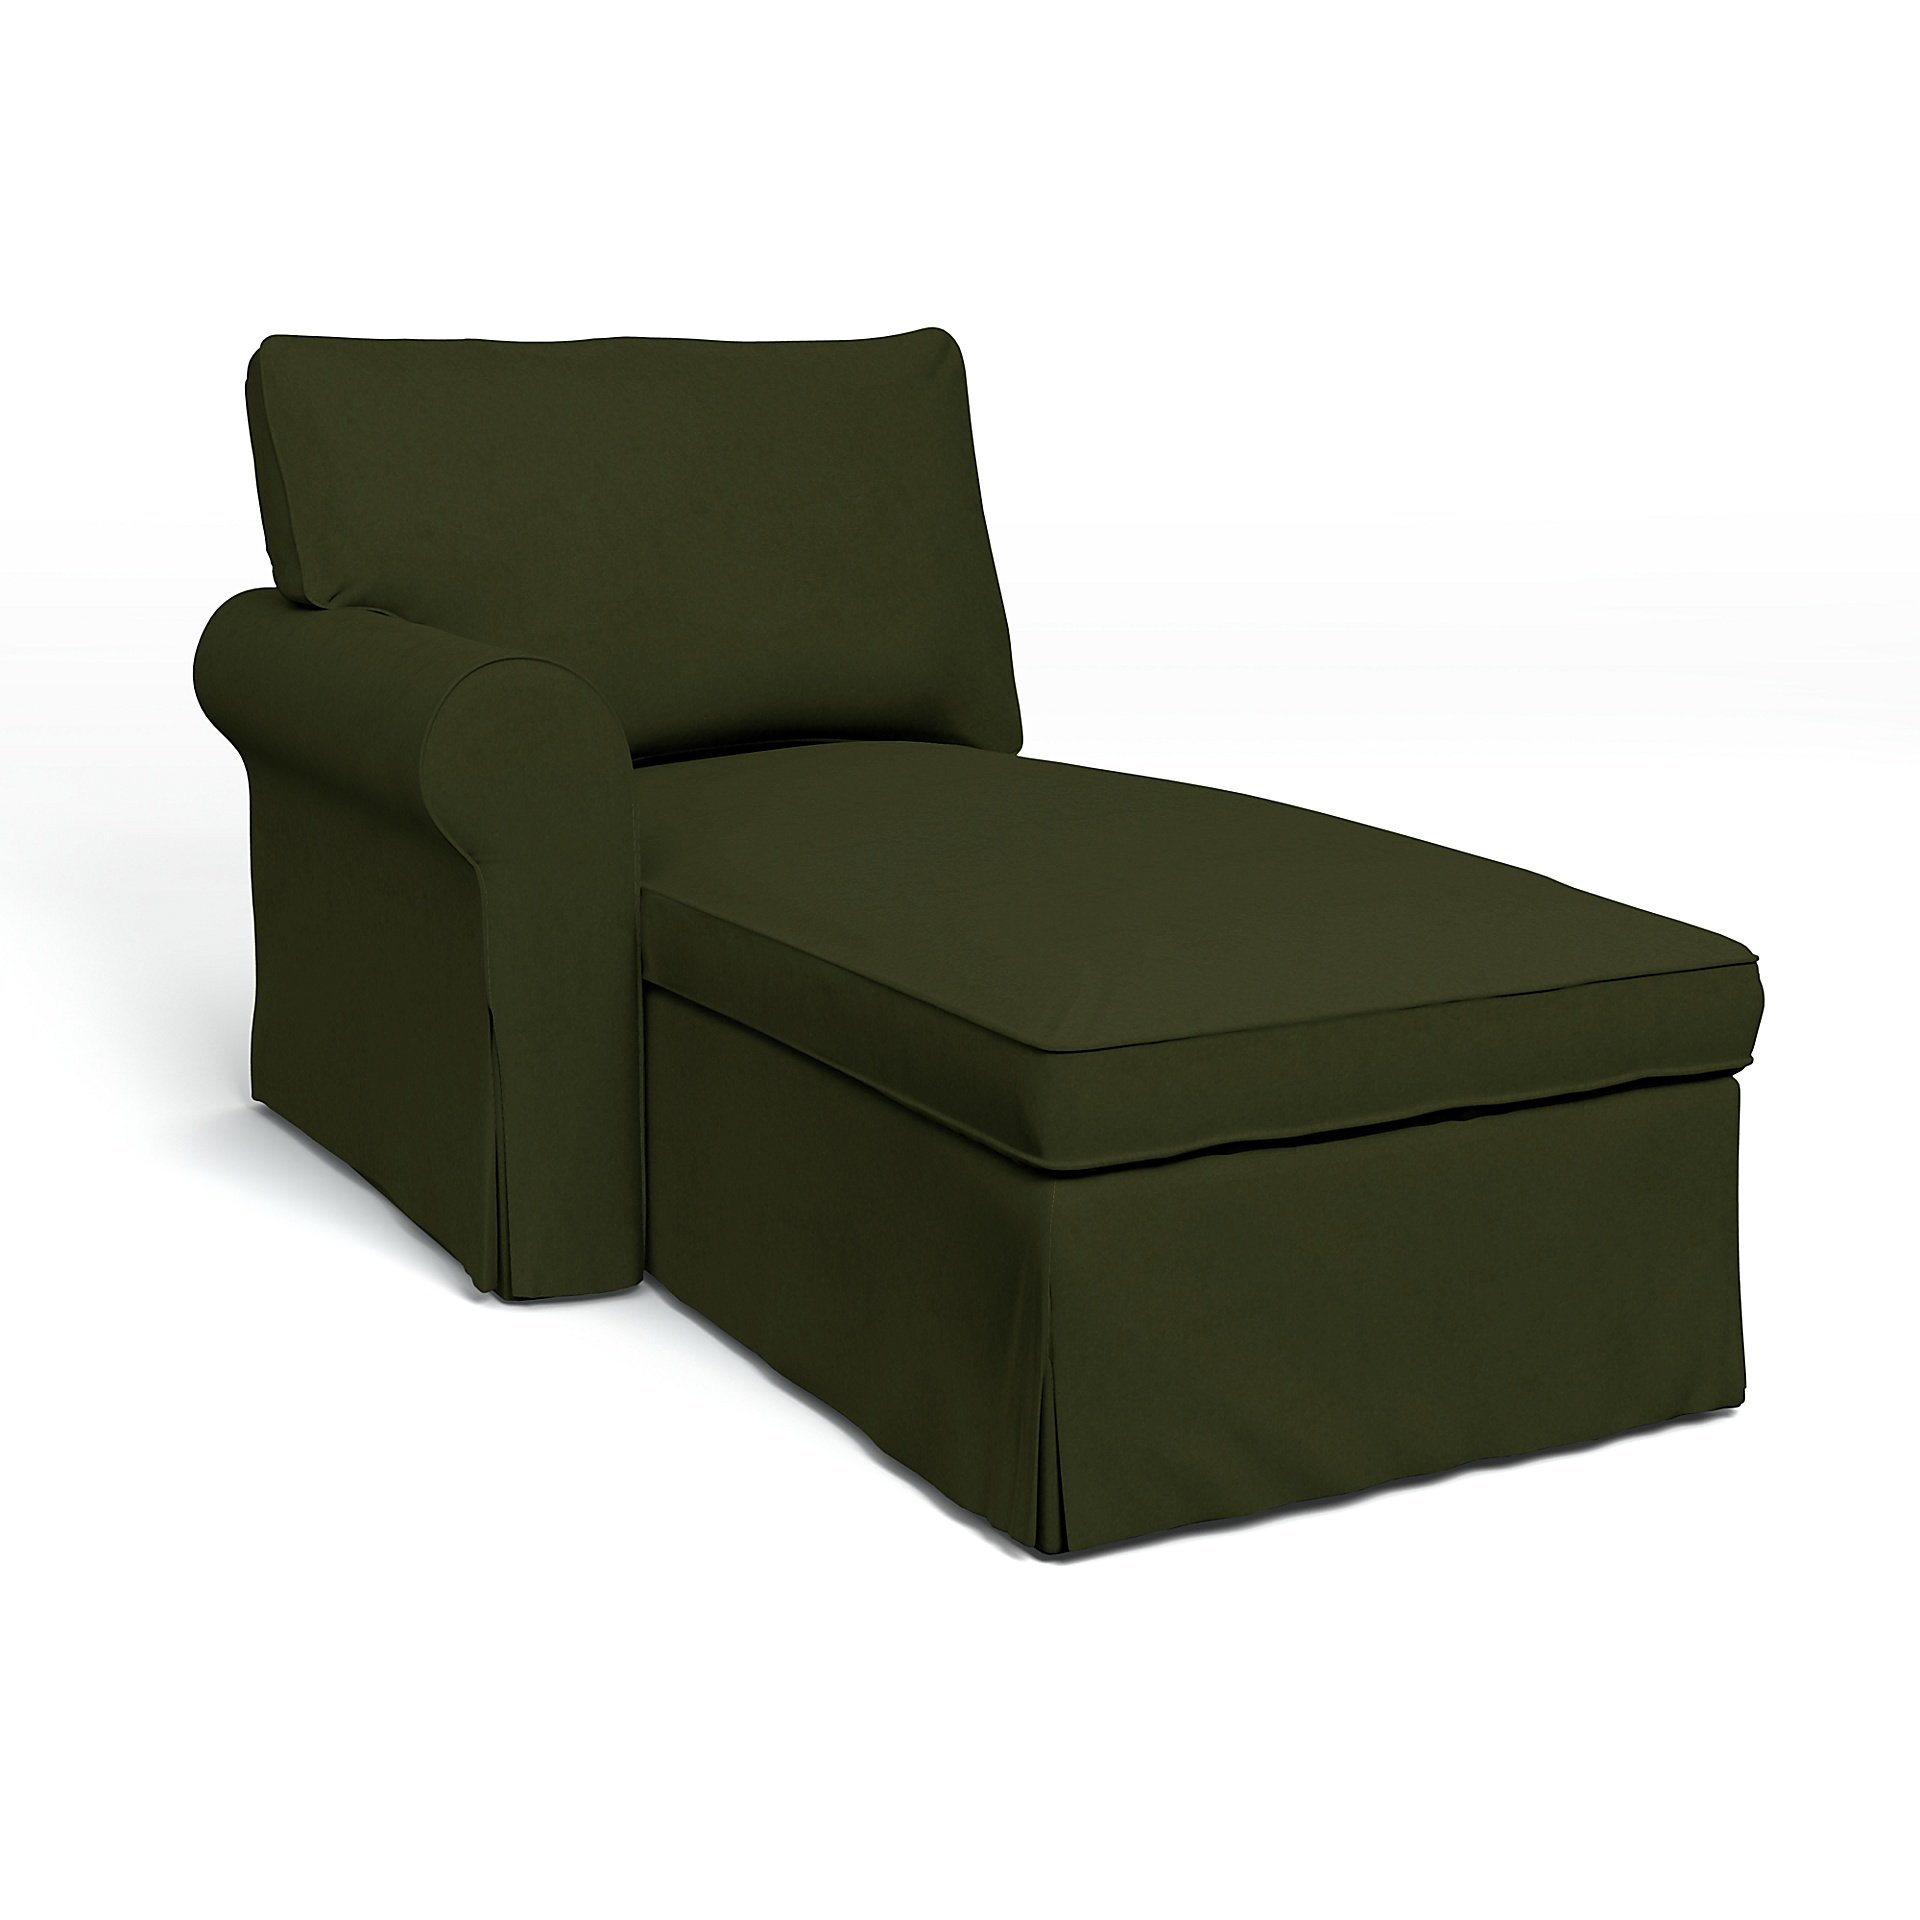 IKEA - Ektorp Chaise with Left Armrest Cover, Moss, Velvet - Bemz